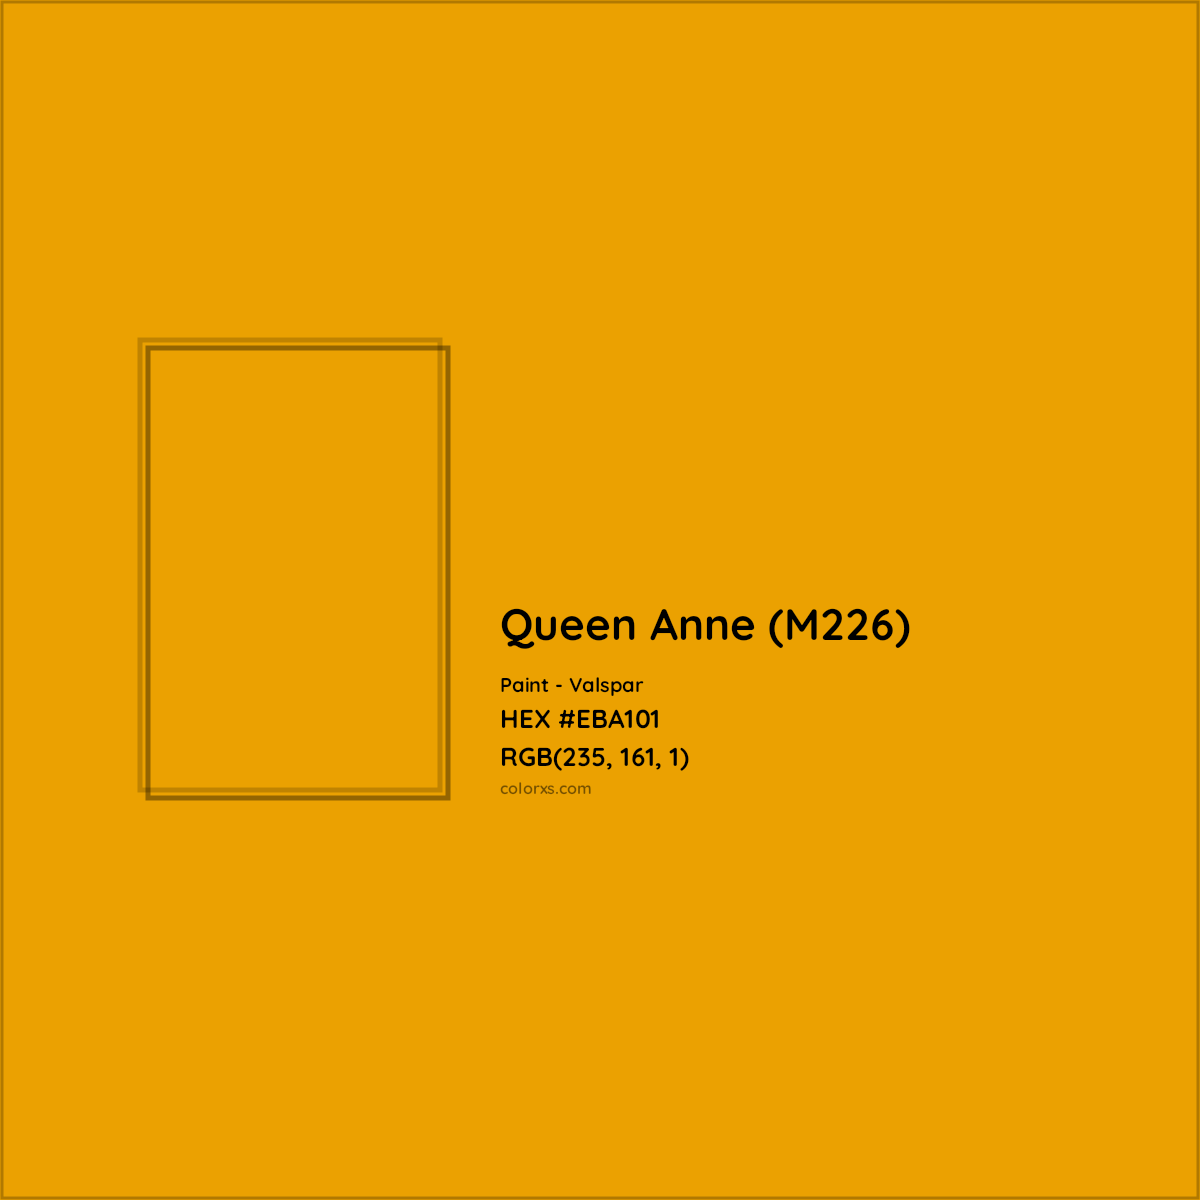 HEX #EBA101 Queen Anne (M226) Paint Valspar - Color Code